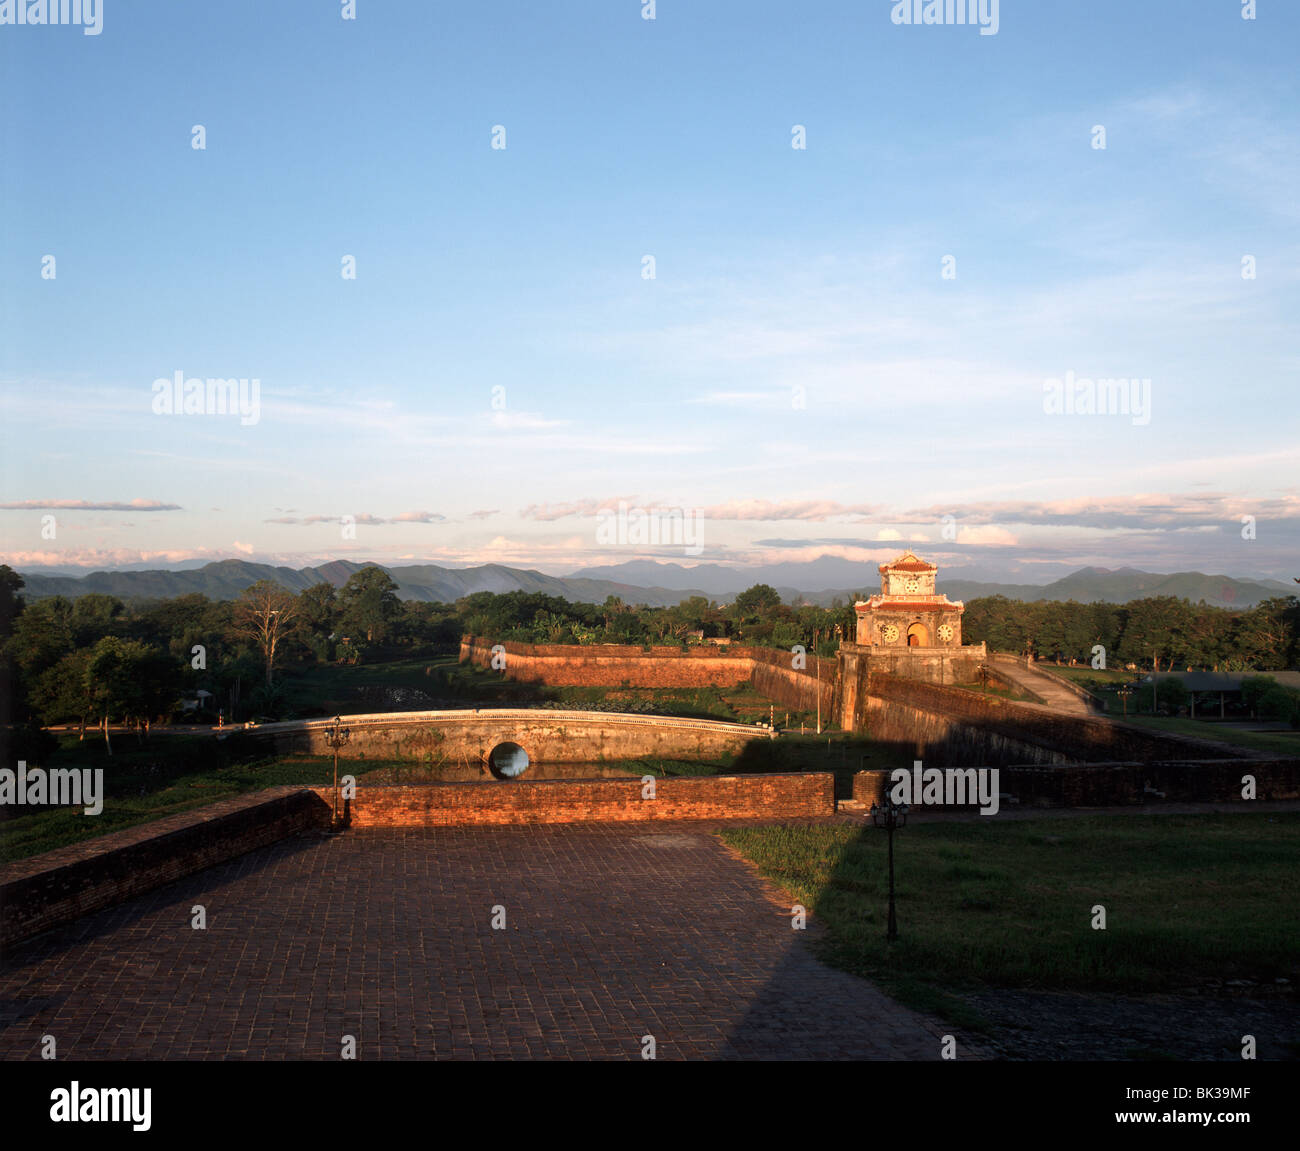 La citadelle de Hué, Site du patrimoine mondial de l'UNESCO, le Vietnam, l'Indochine, l'Asie du Sud-Est, Asie Banque D'Images